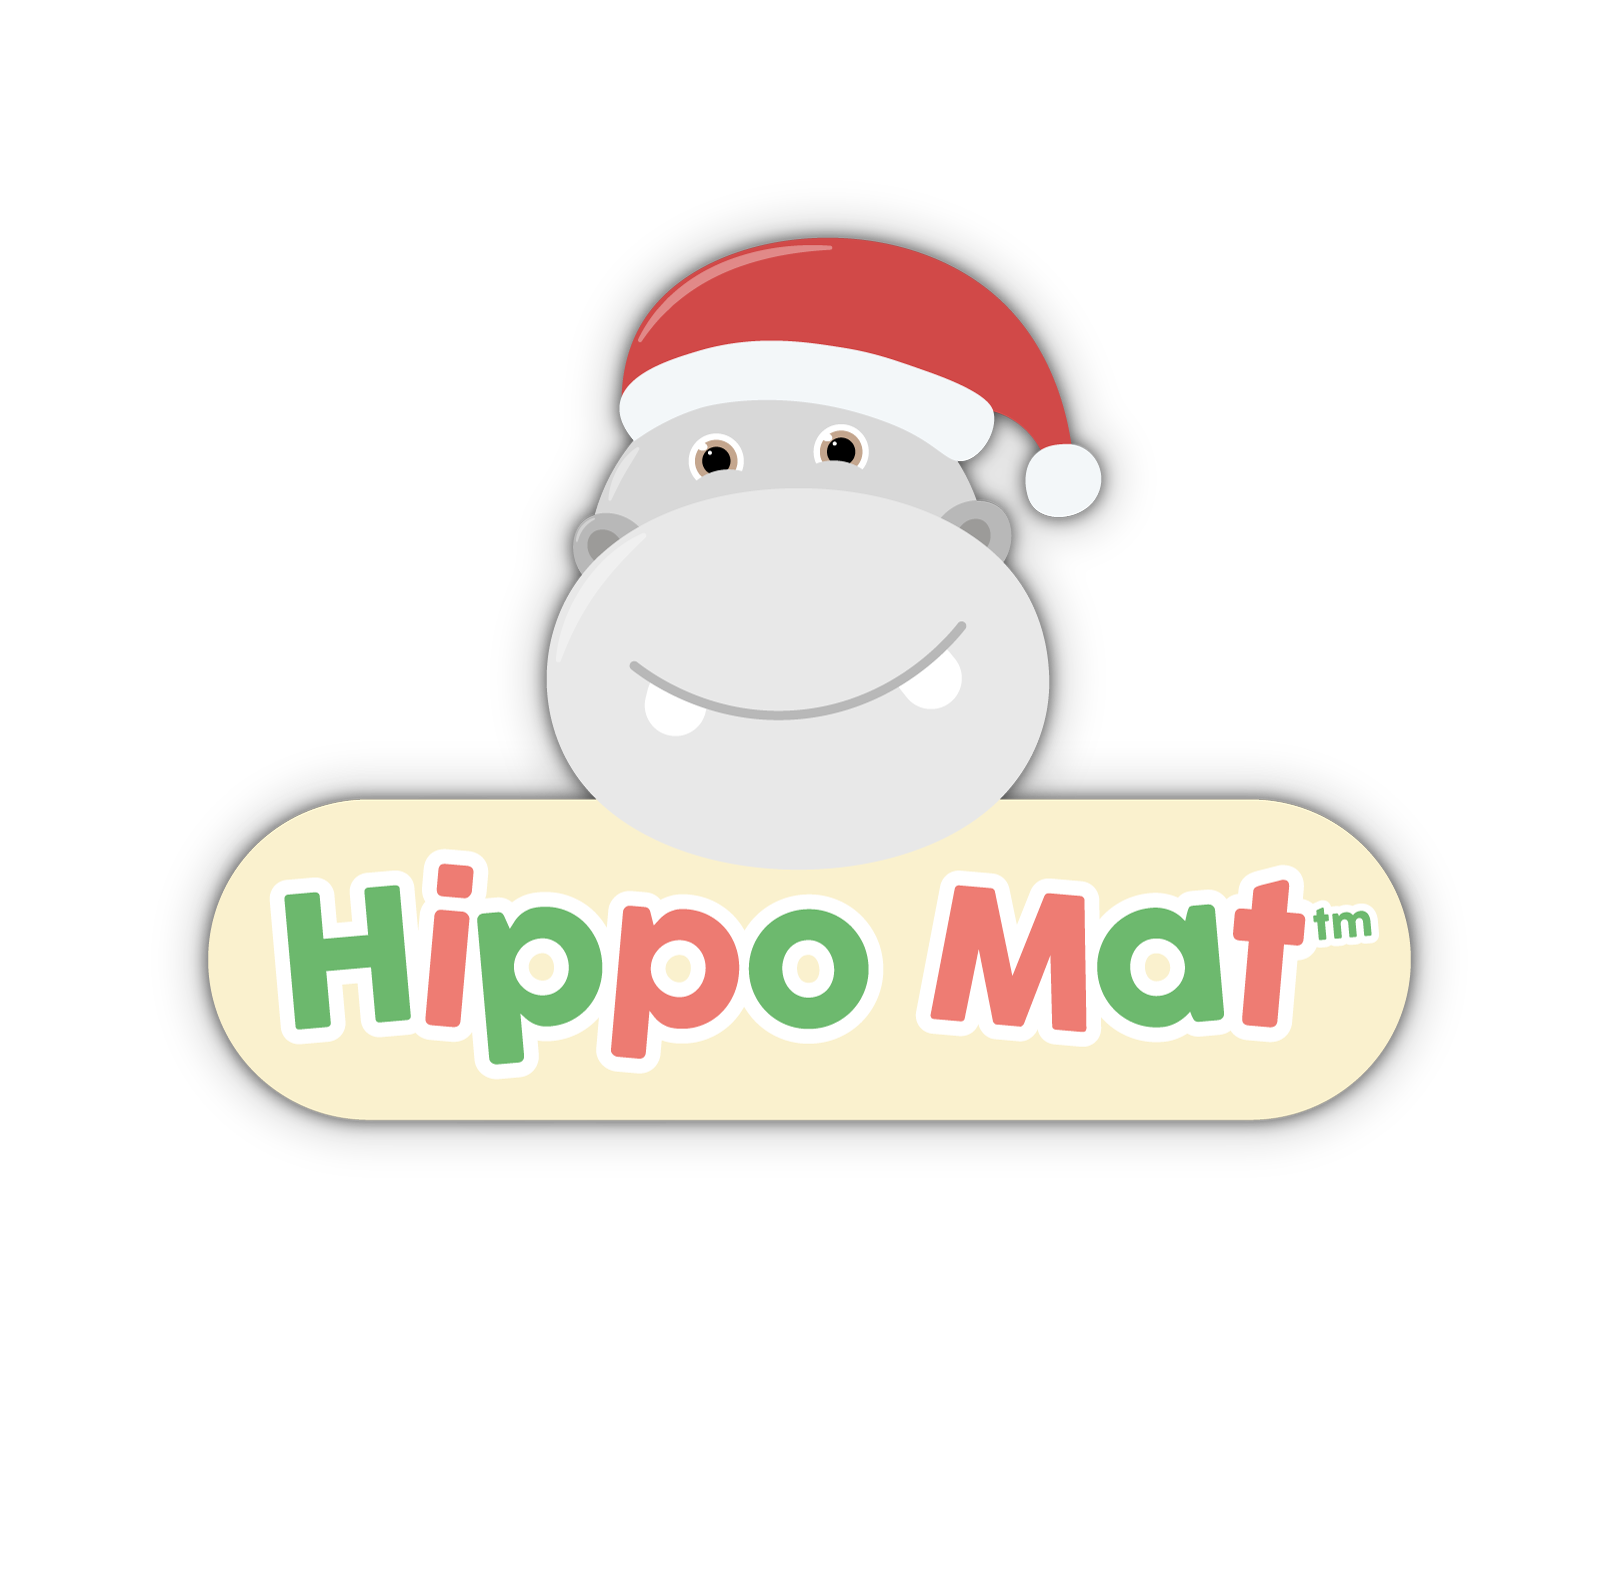 Hippo Mat™